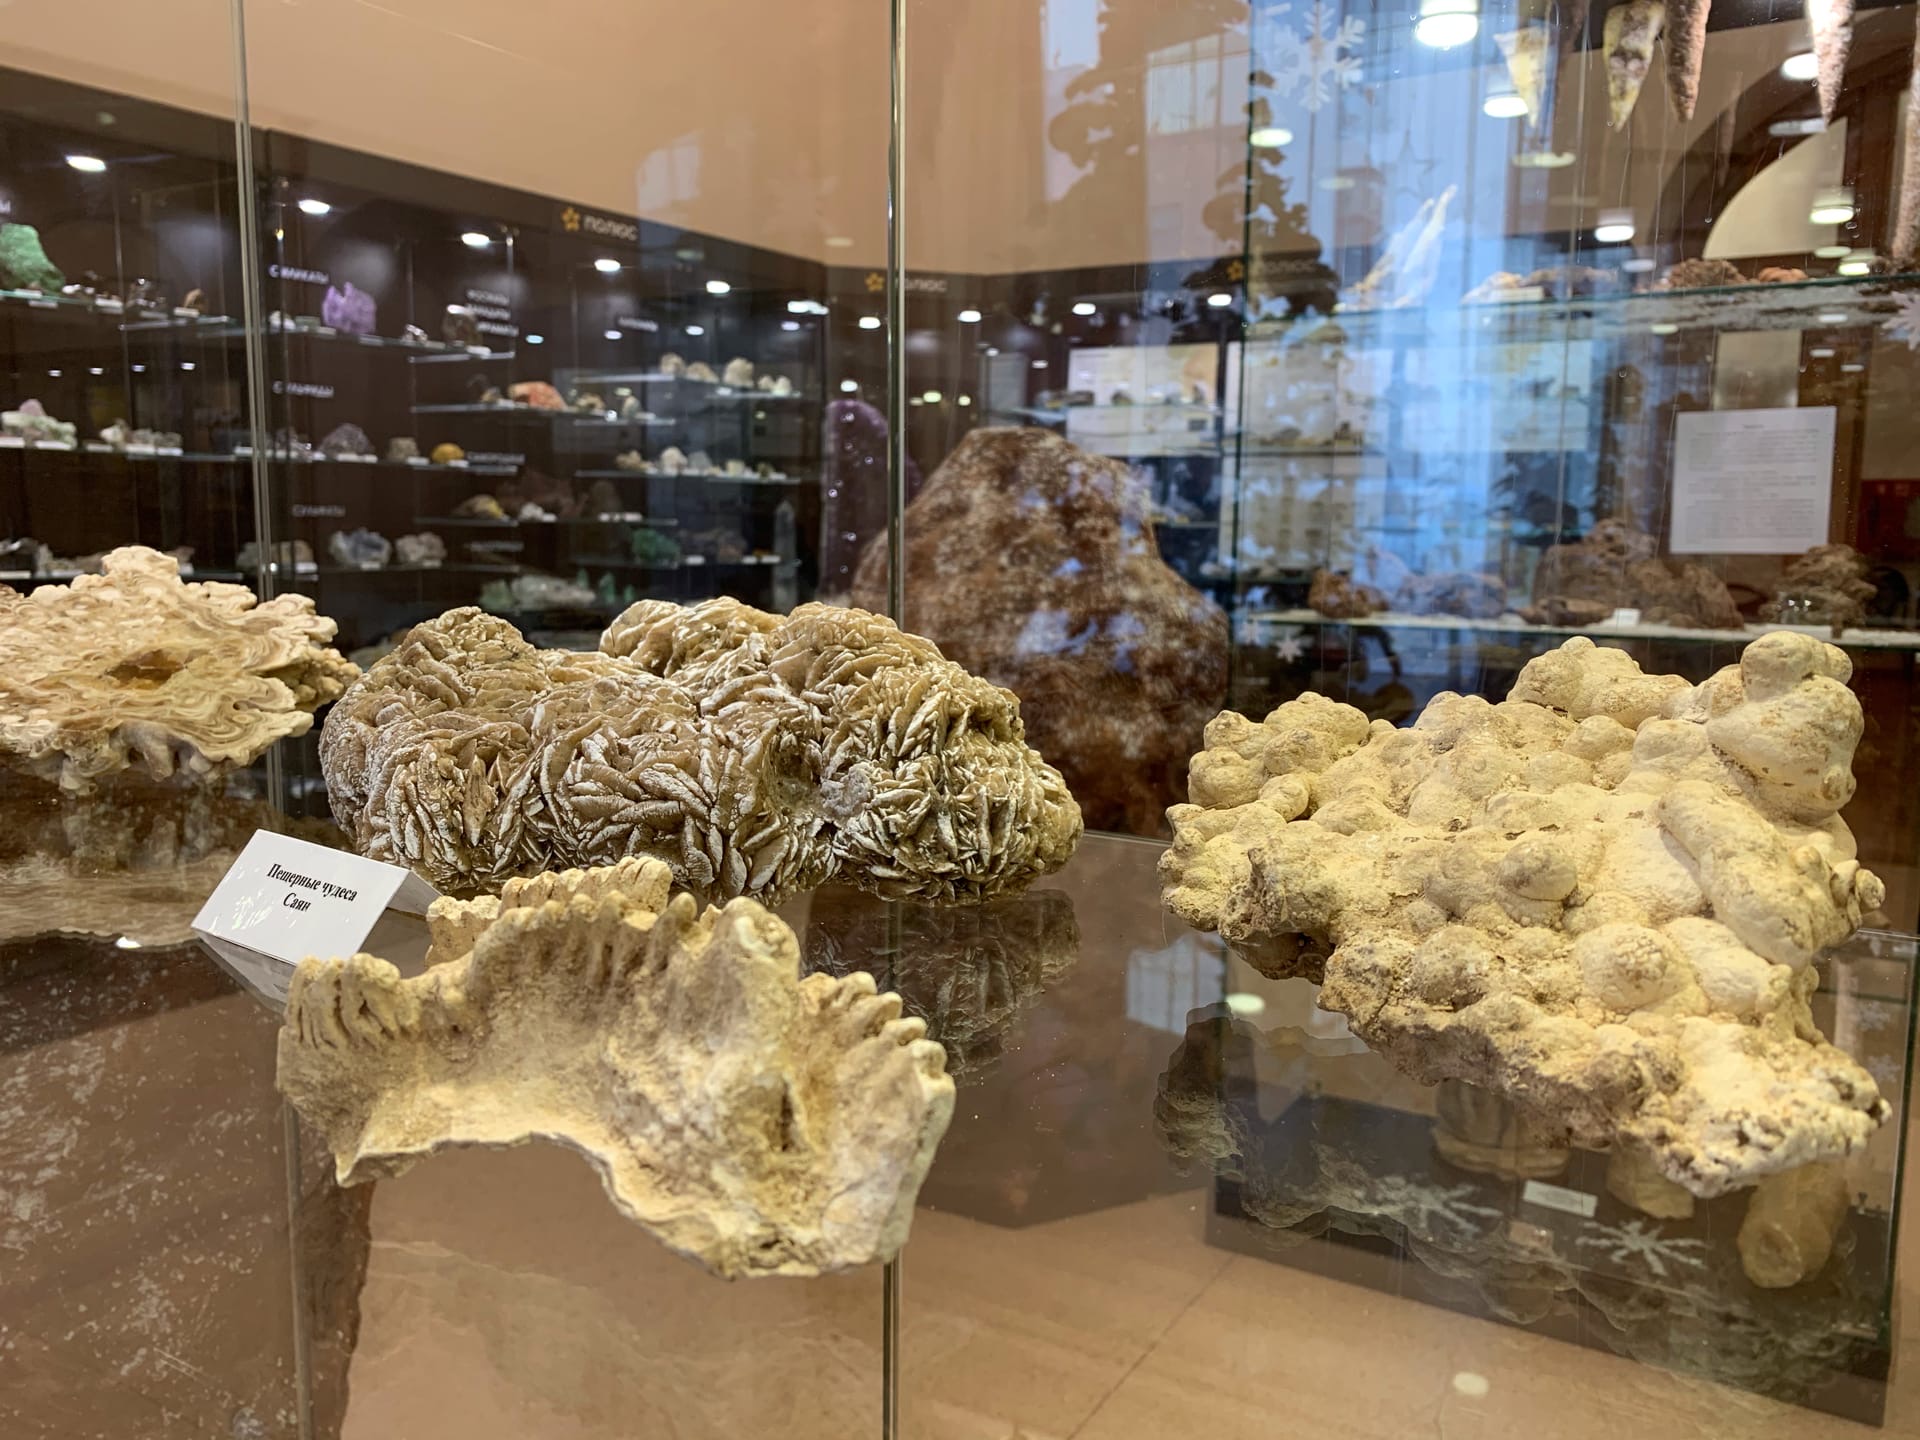 музей геологии центральной сибири красноярск